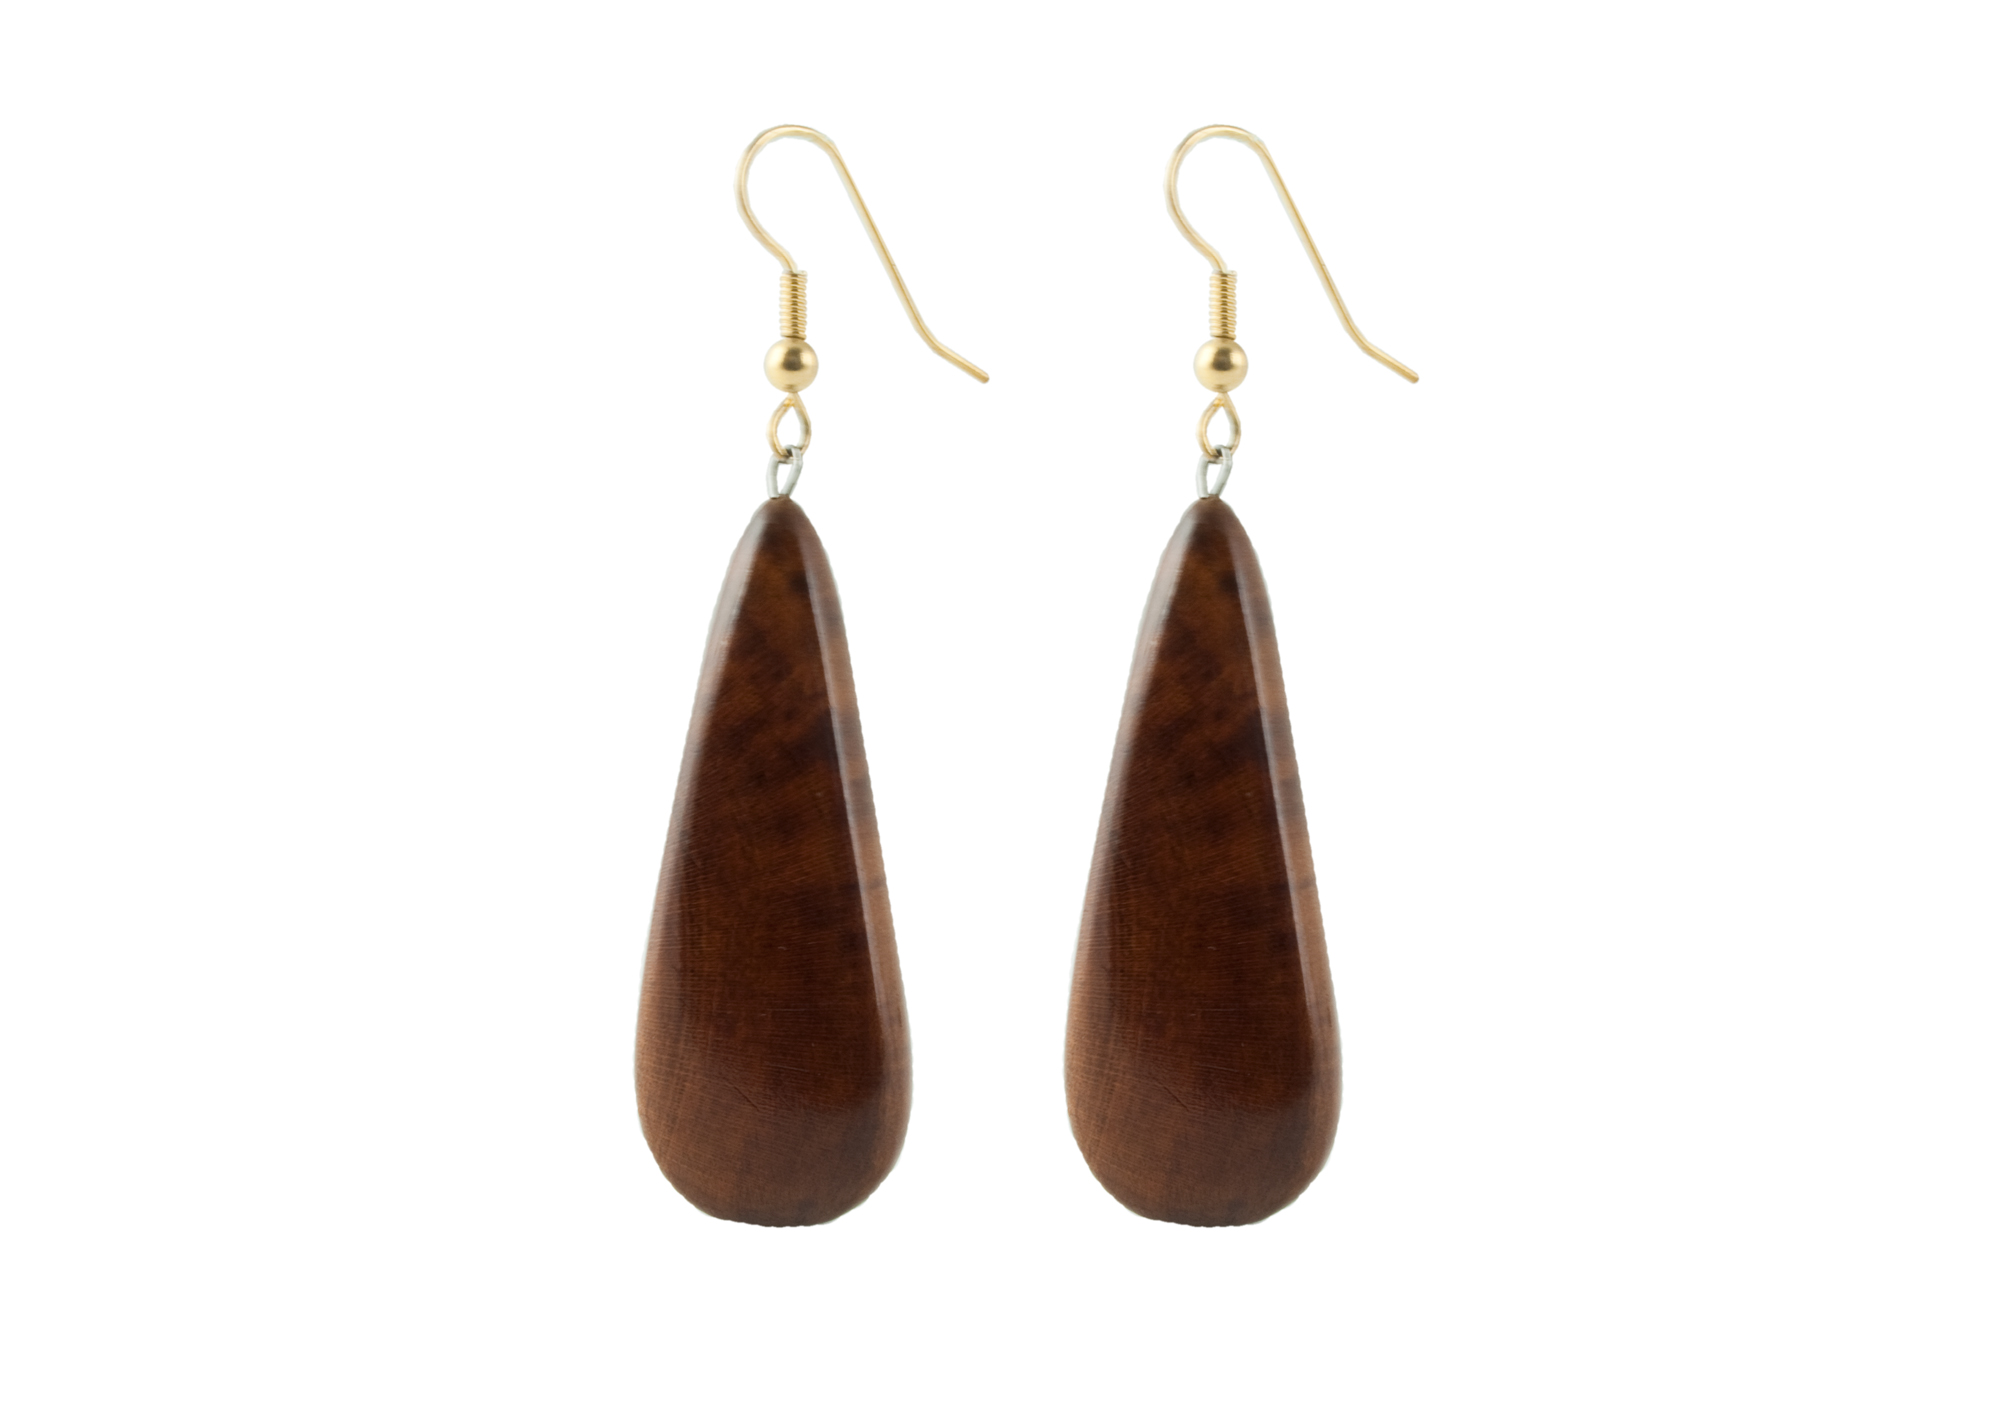 Buy Black Sea Earrings Wooden Brown Teardrop at GoldenCockerel.com